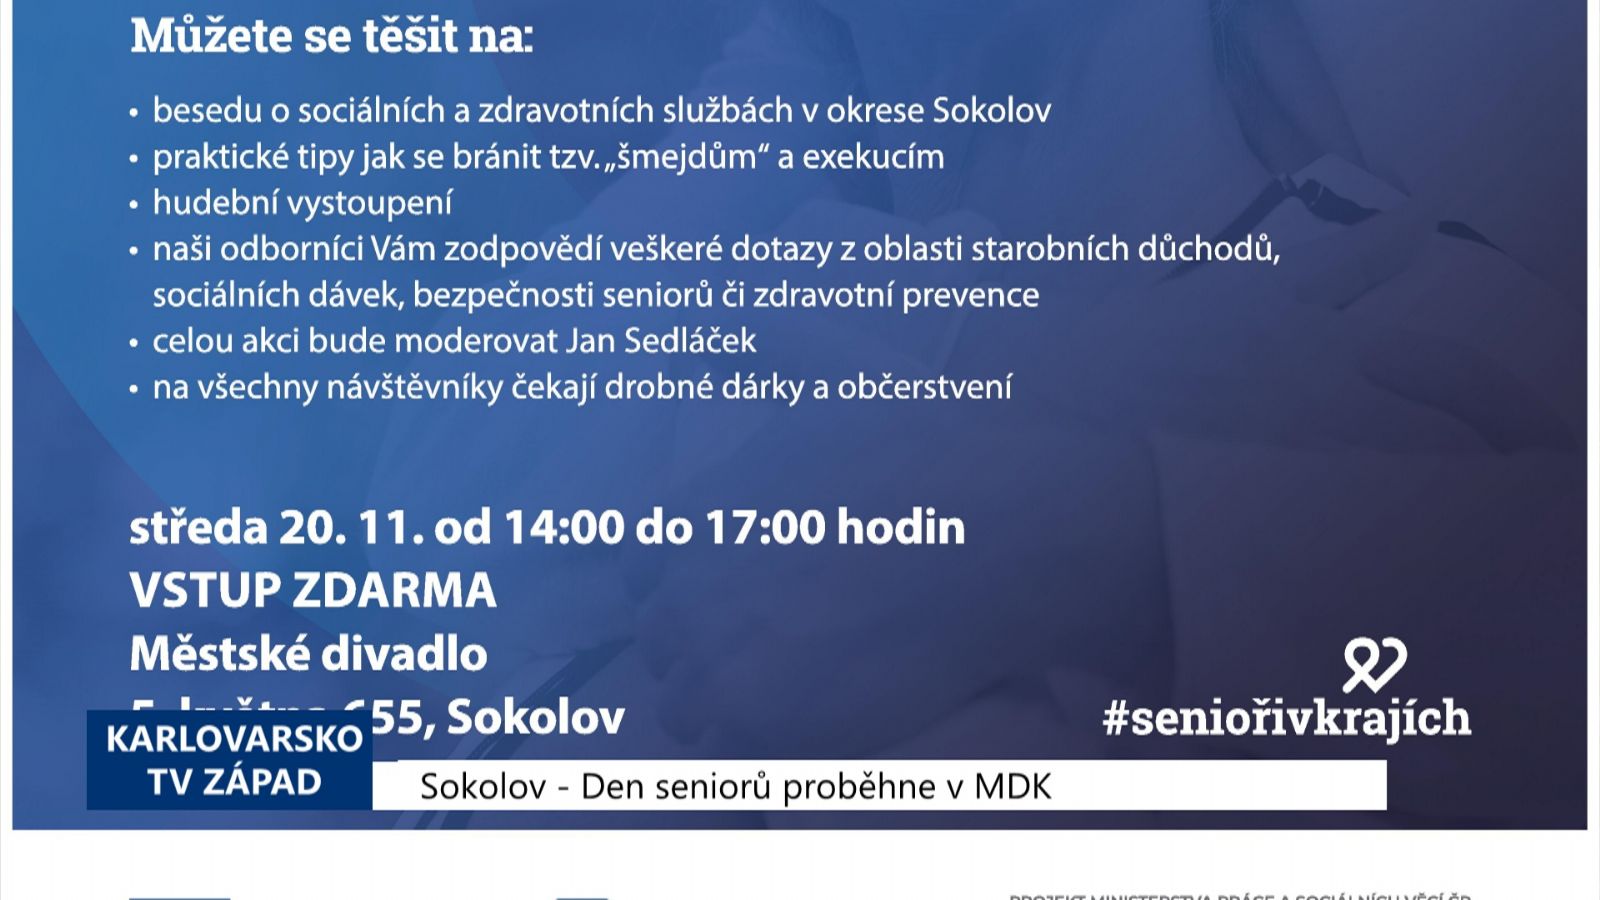 Region: Den seniorů proběhne v MDK (TV Západ)